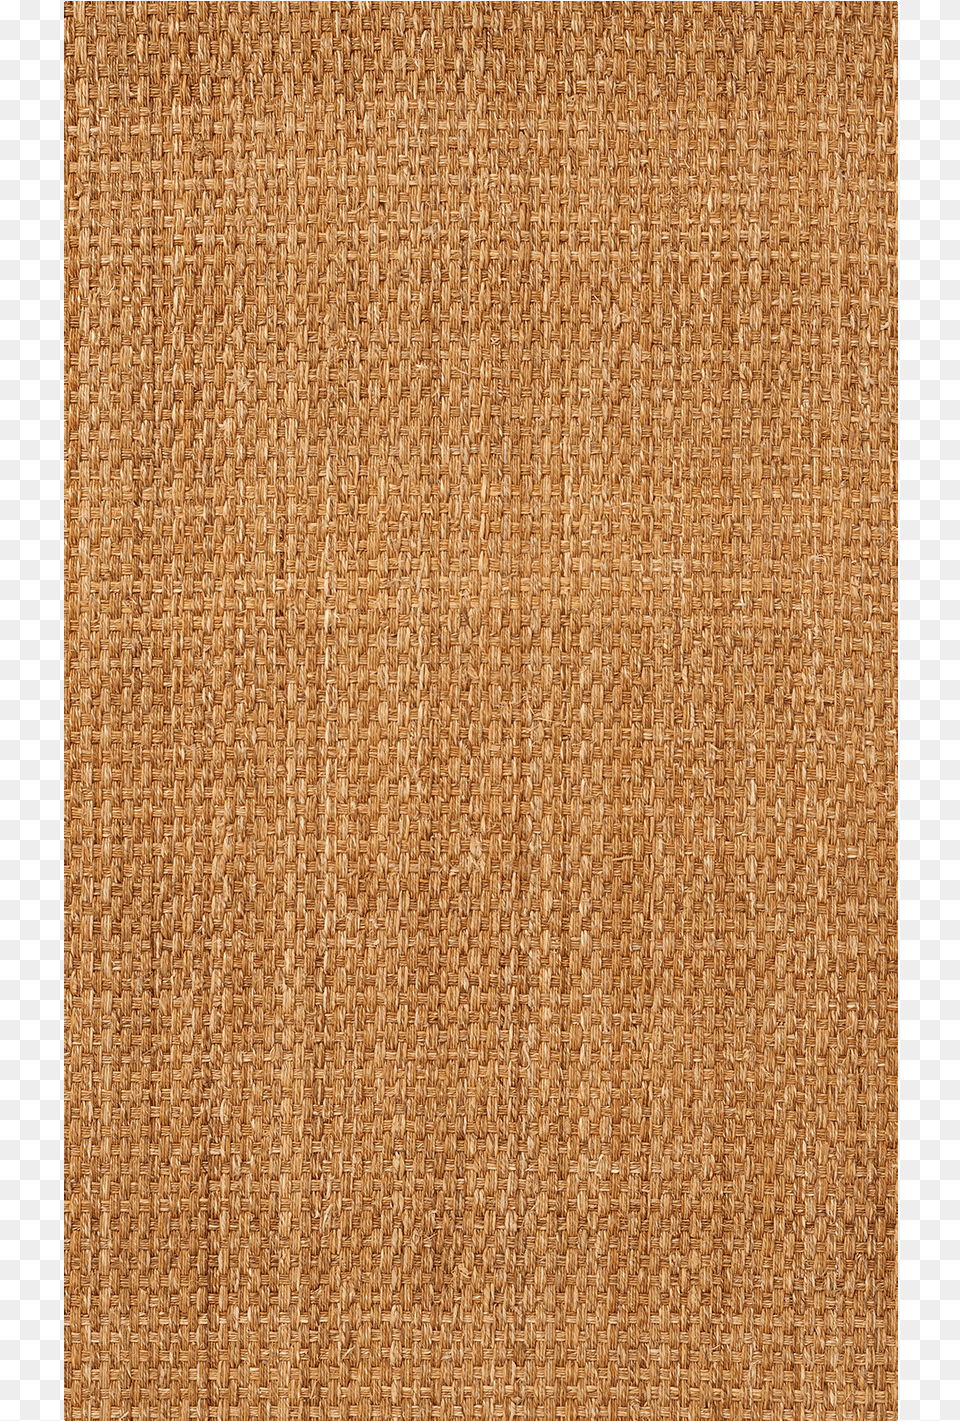 Carpet, Woven, Texture, Home Decor, Linen Free Transparent Png